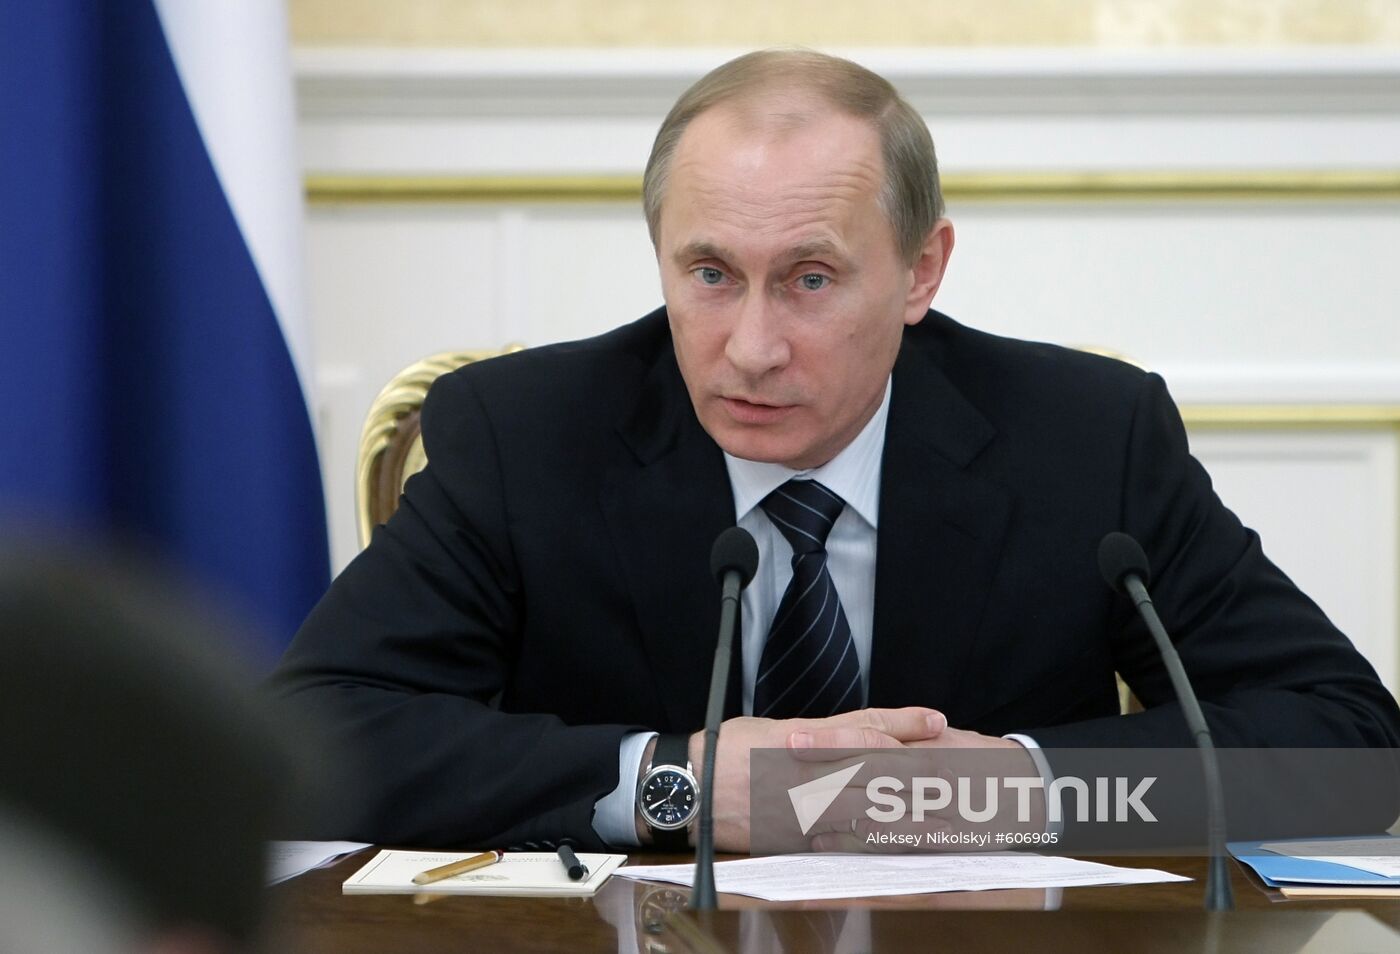 Vladimir Putin chairs Government Presidium meeting